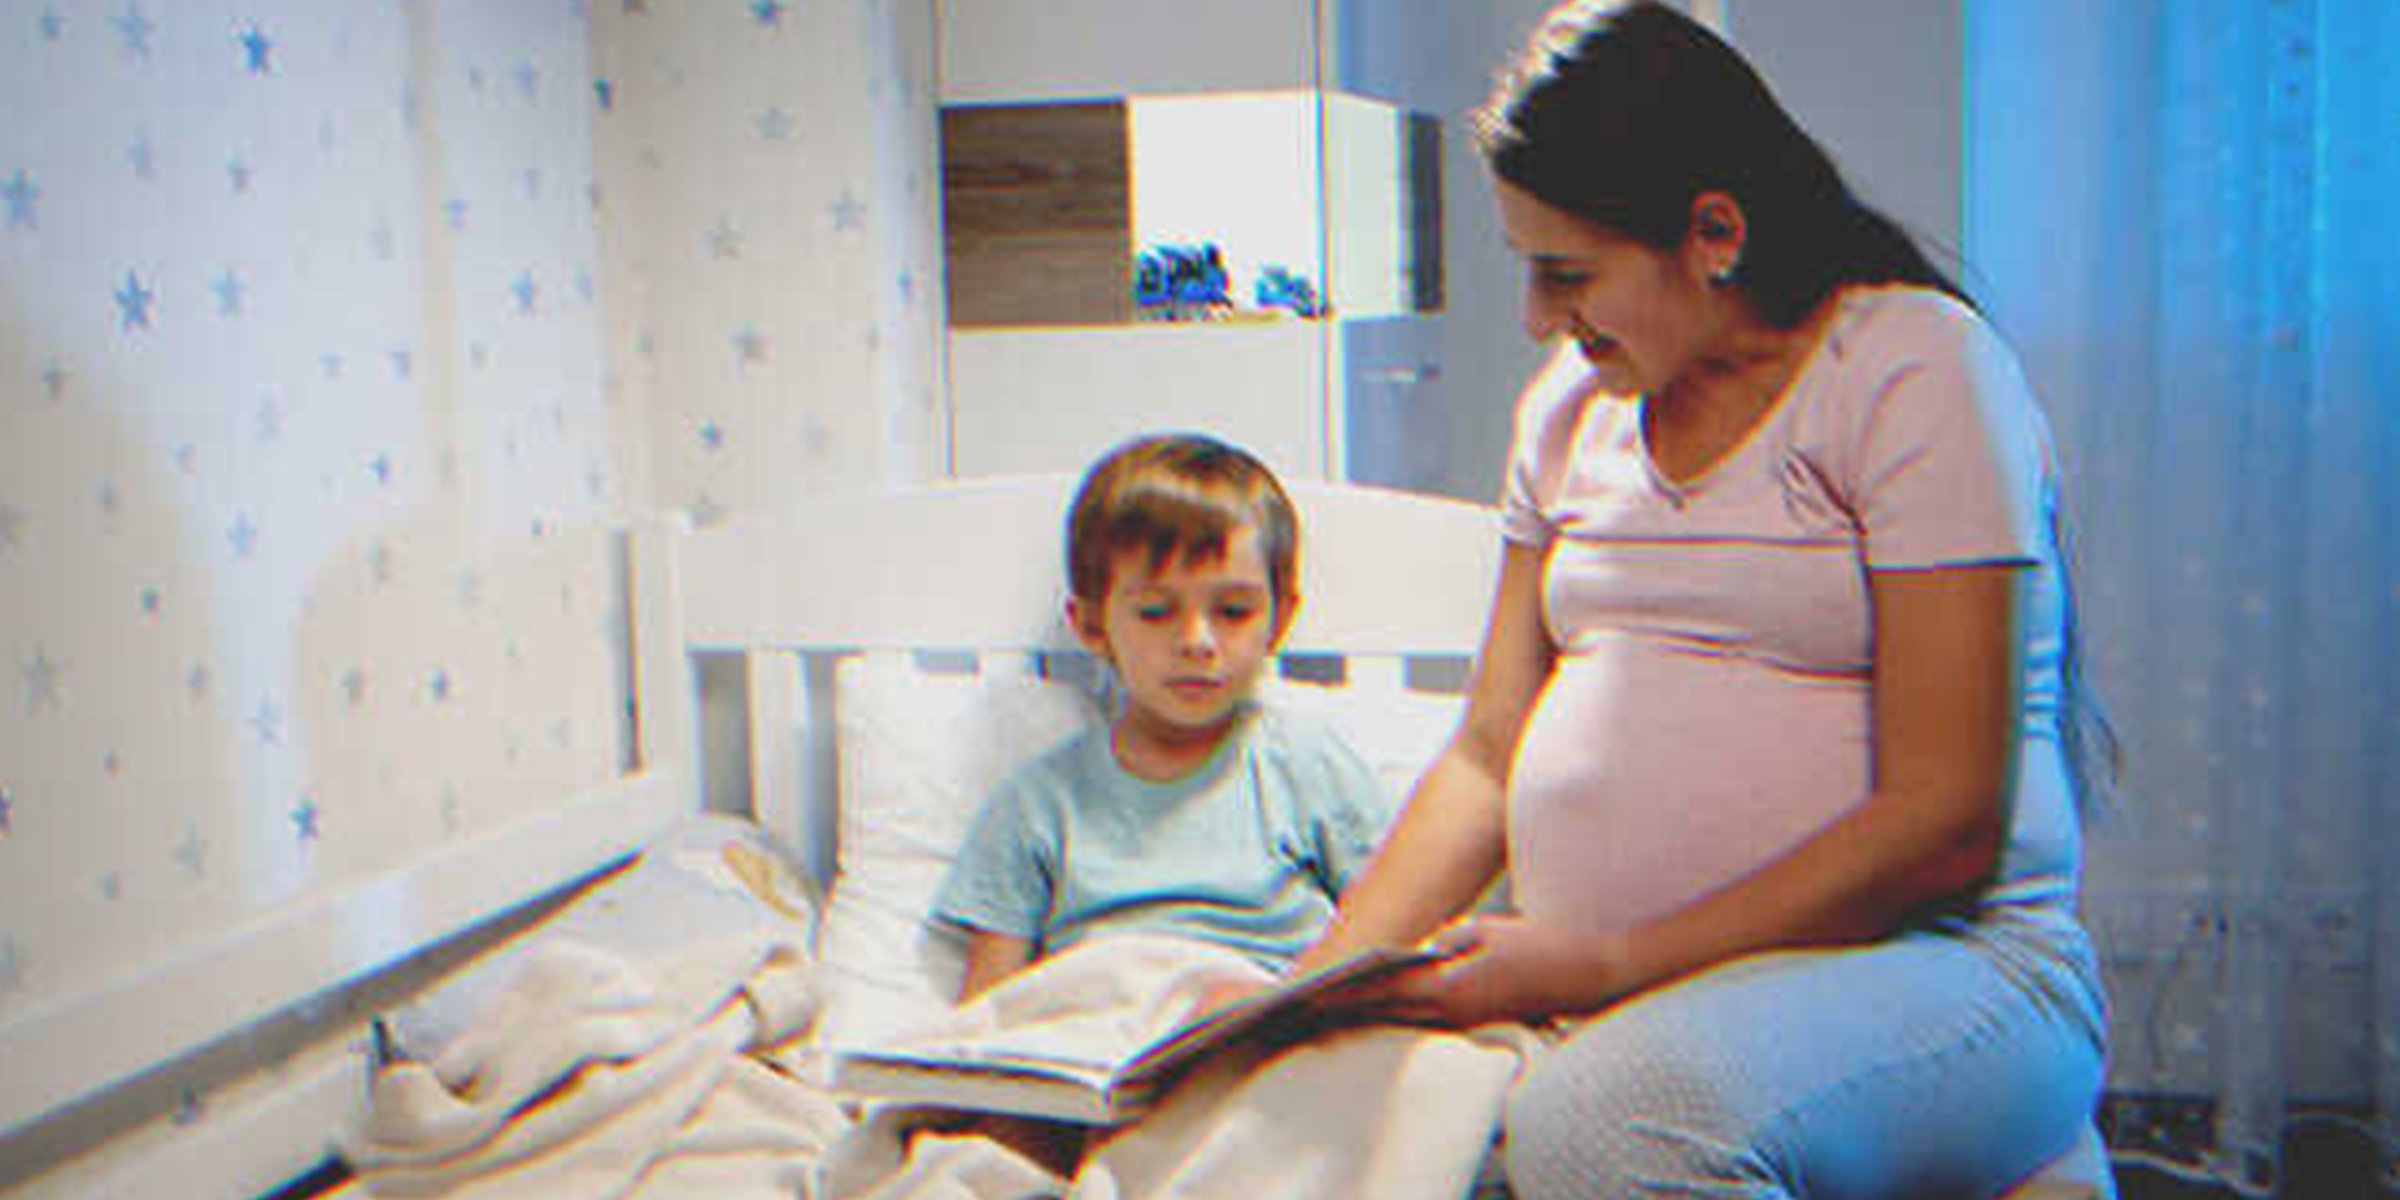 Mama liest einem kleinen Jungen im Bett vor | Quelle: Shutterstock